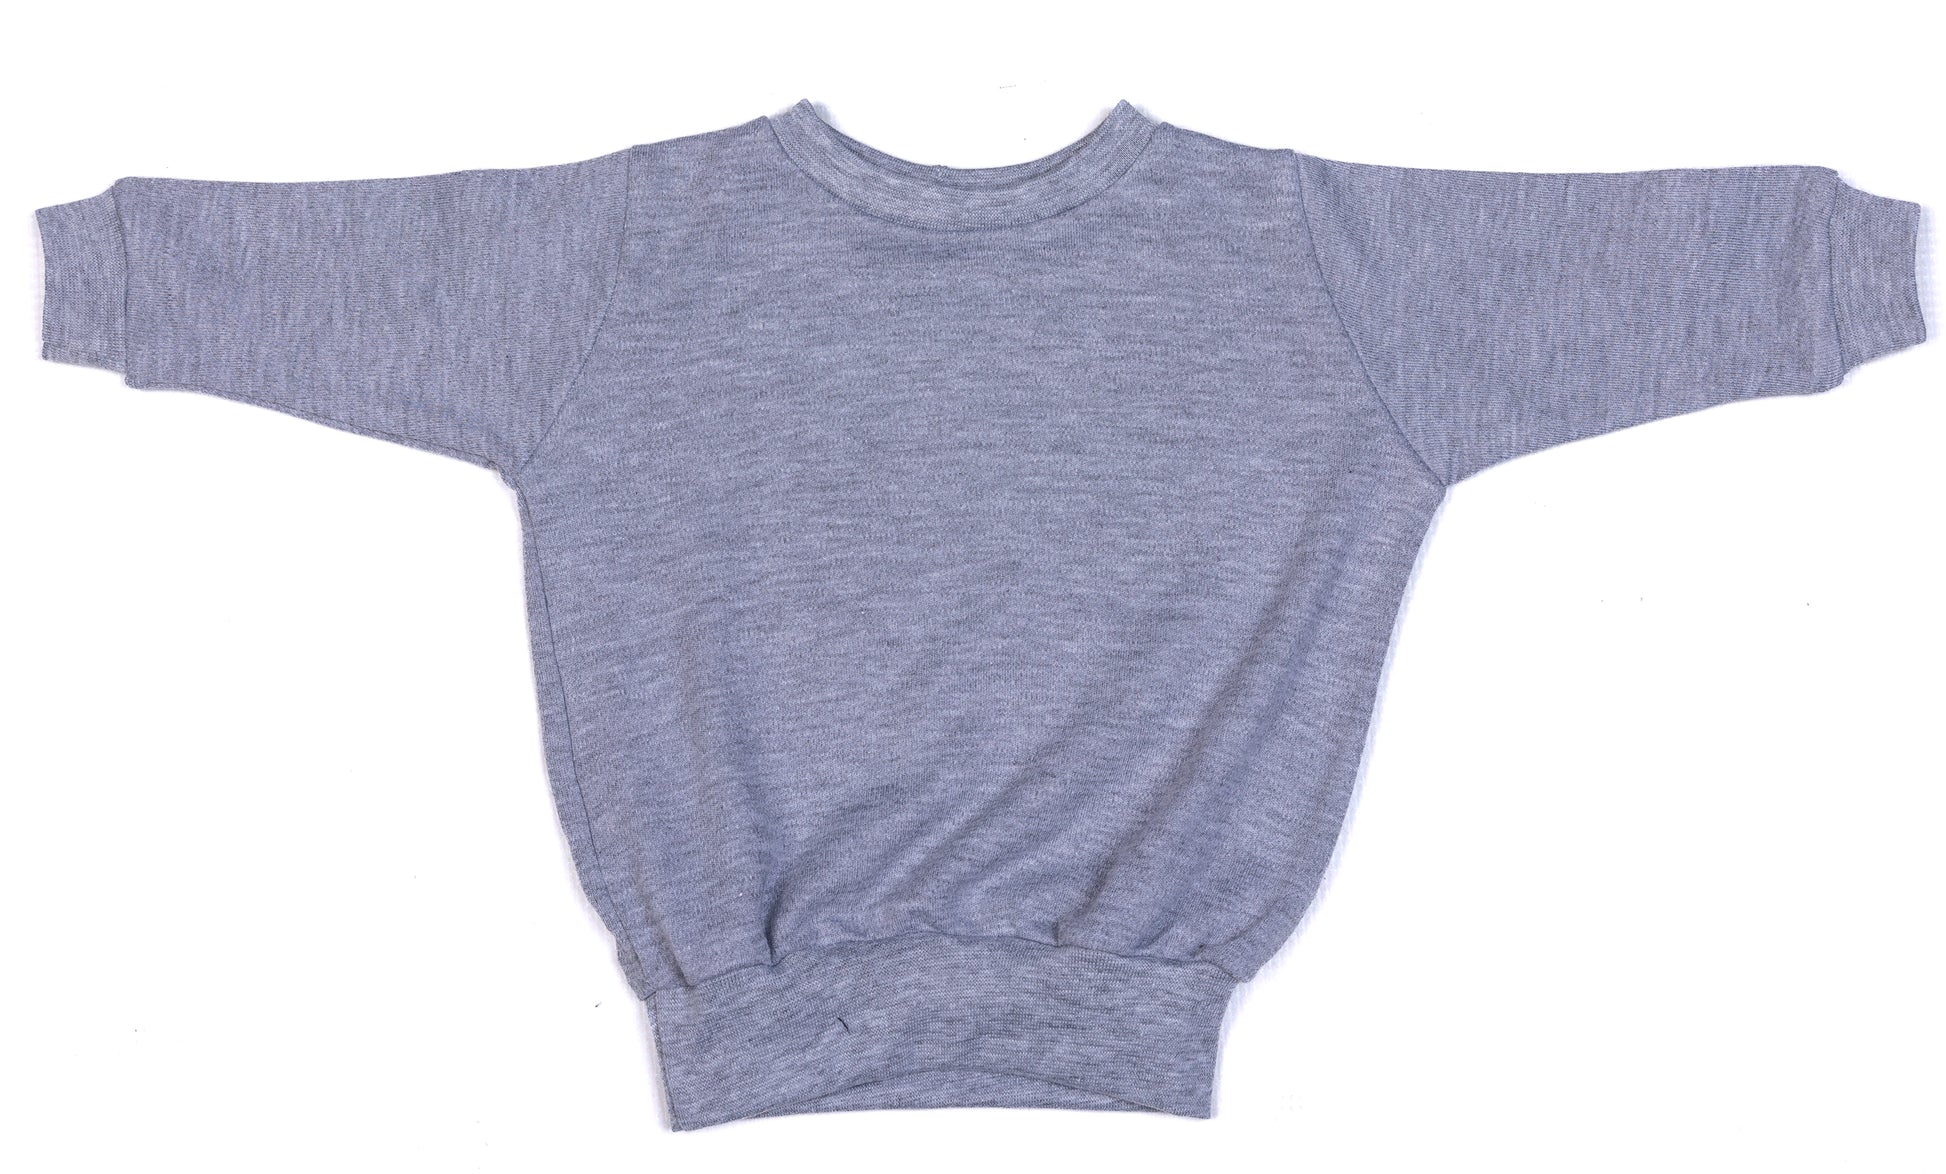 Long Sleeved Baby Sweatshirts - Little Lumps